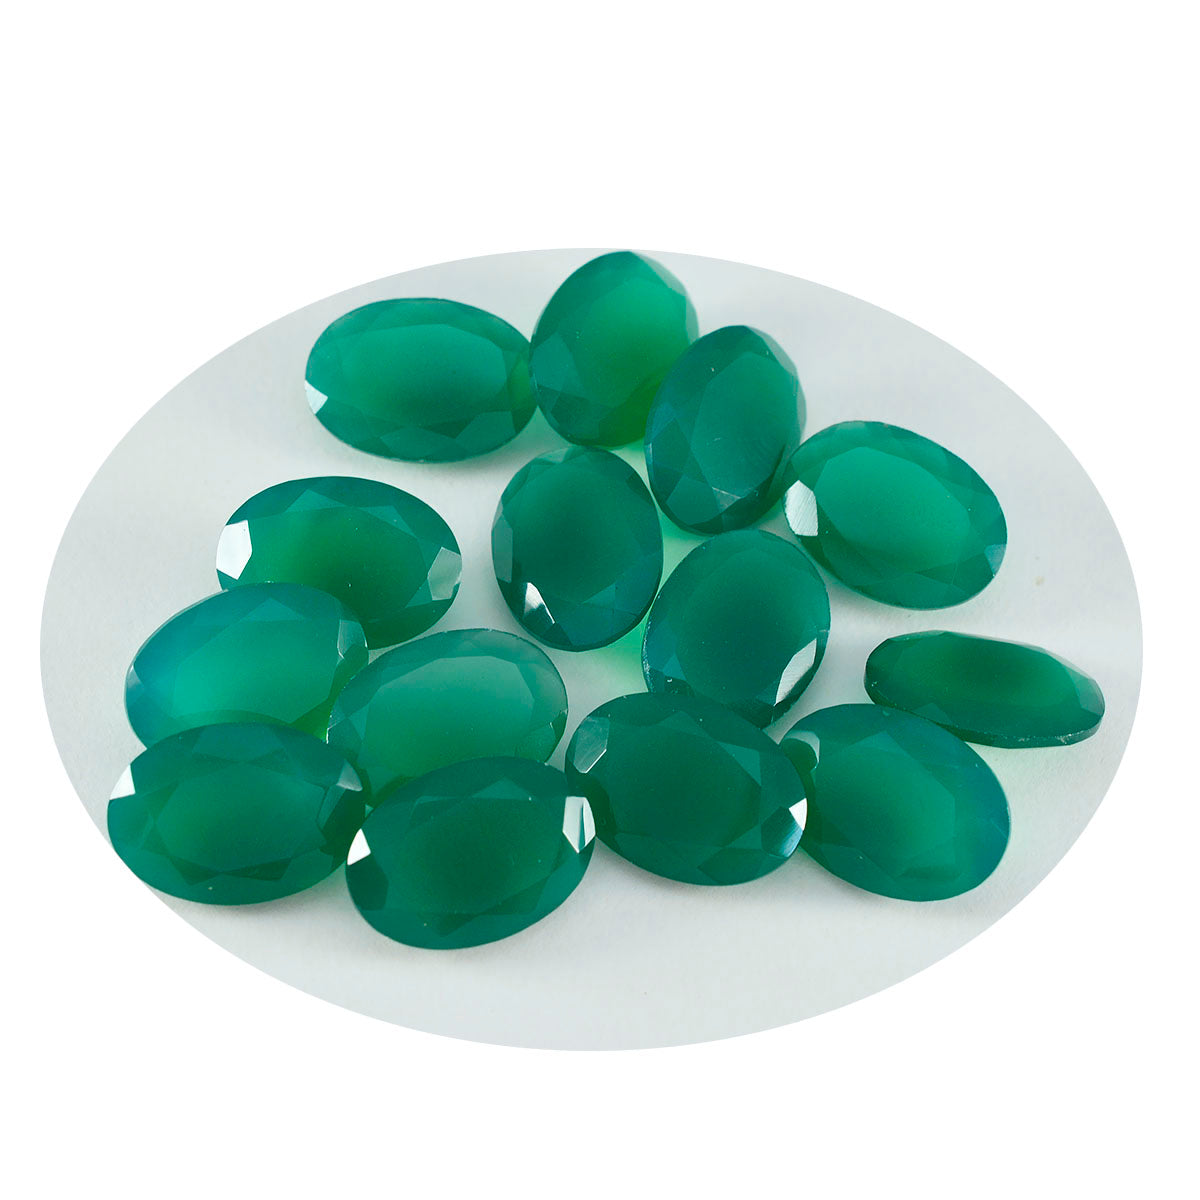 Riyogems 1 pièce d'onyx vert véritable à facettes 6x8mm forme ovale belle qualité pierre précieuse en vrac